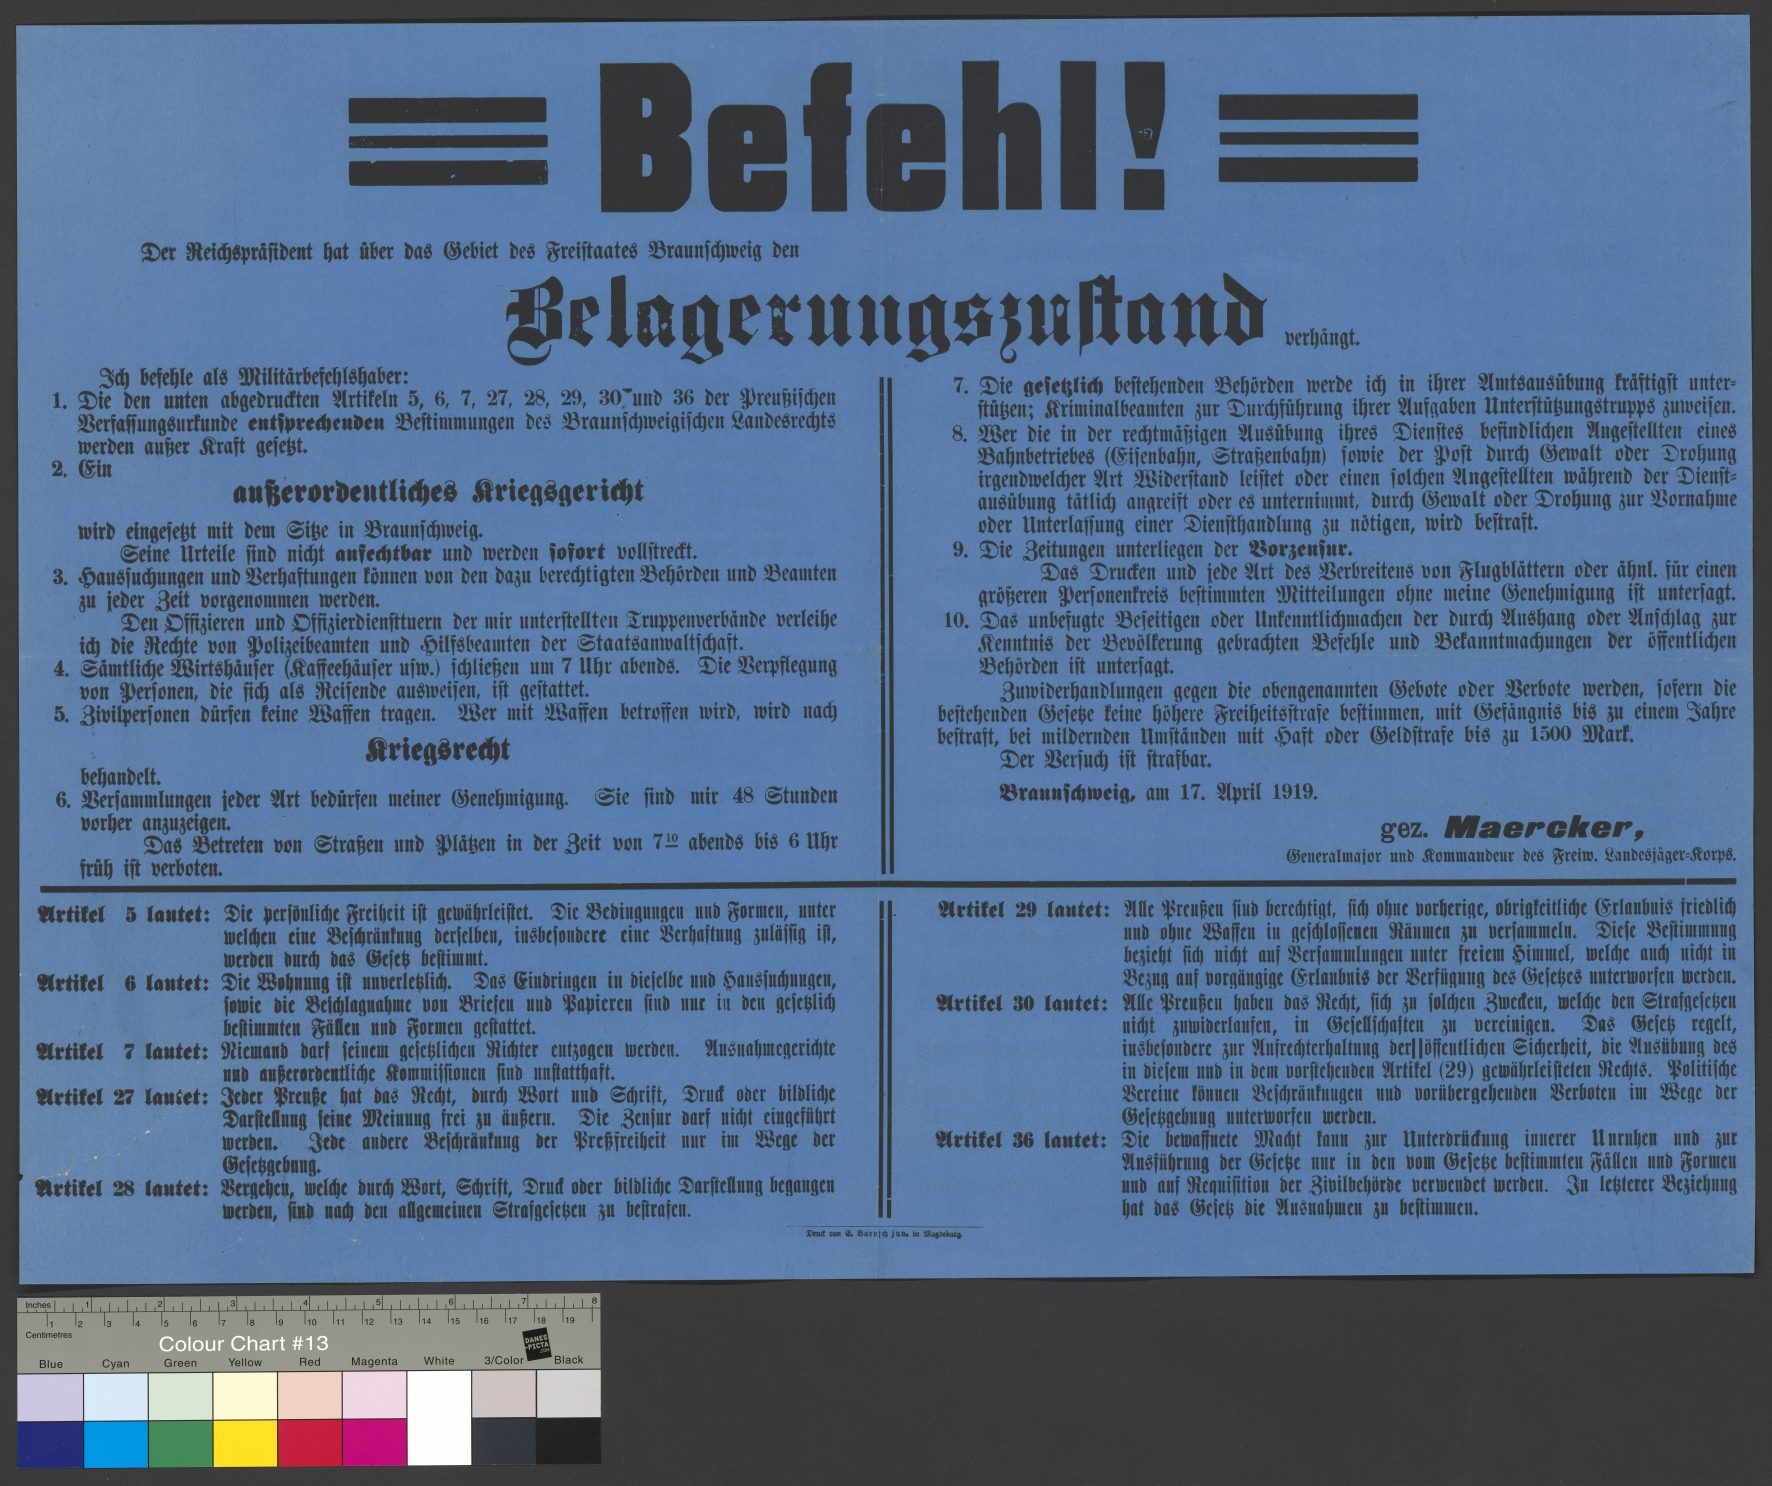 Anordnungen des General Maercker zum verhängten Belagerungszustand für das Gebiet des Freistaates Braunschweig, 17. April 1919 (H XVII: 0004.0029) (Wird bei Klick vergrößert)